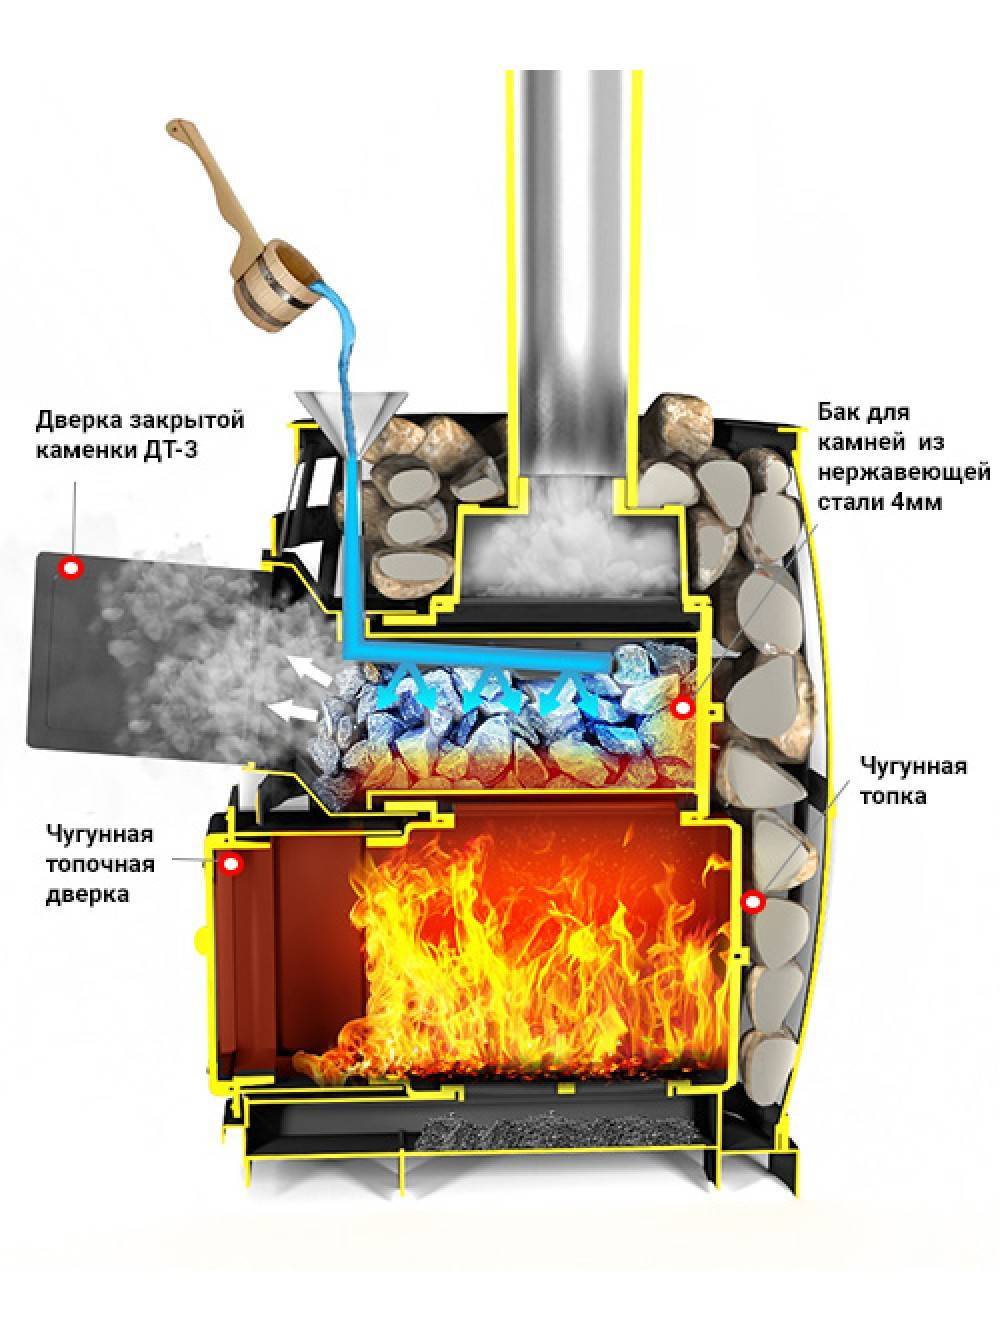 Газовая печь для бани, горелки на газу и под дрова, лучшая банная конструкция